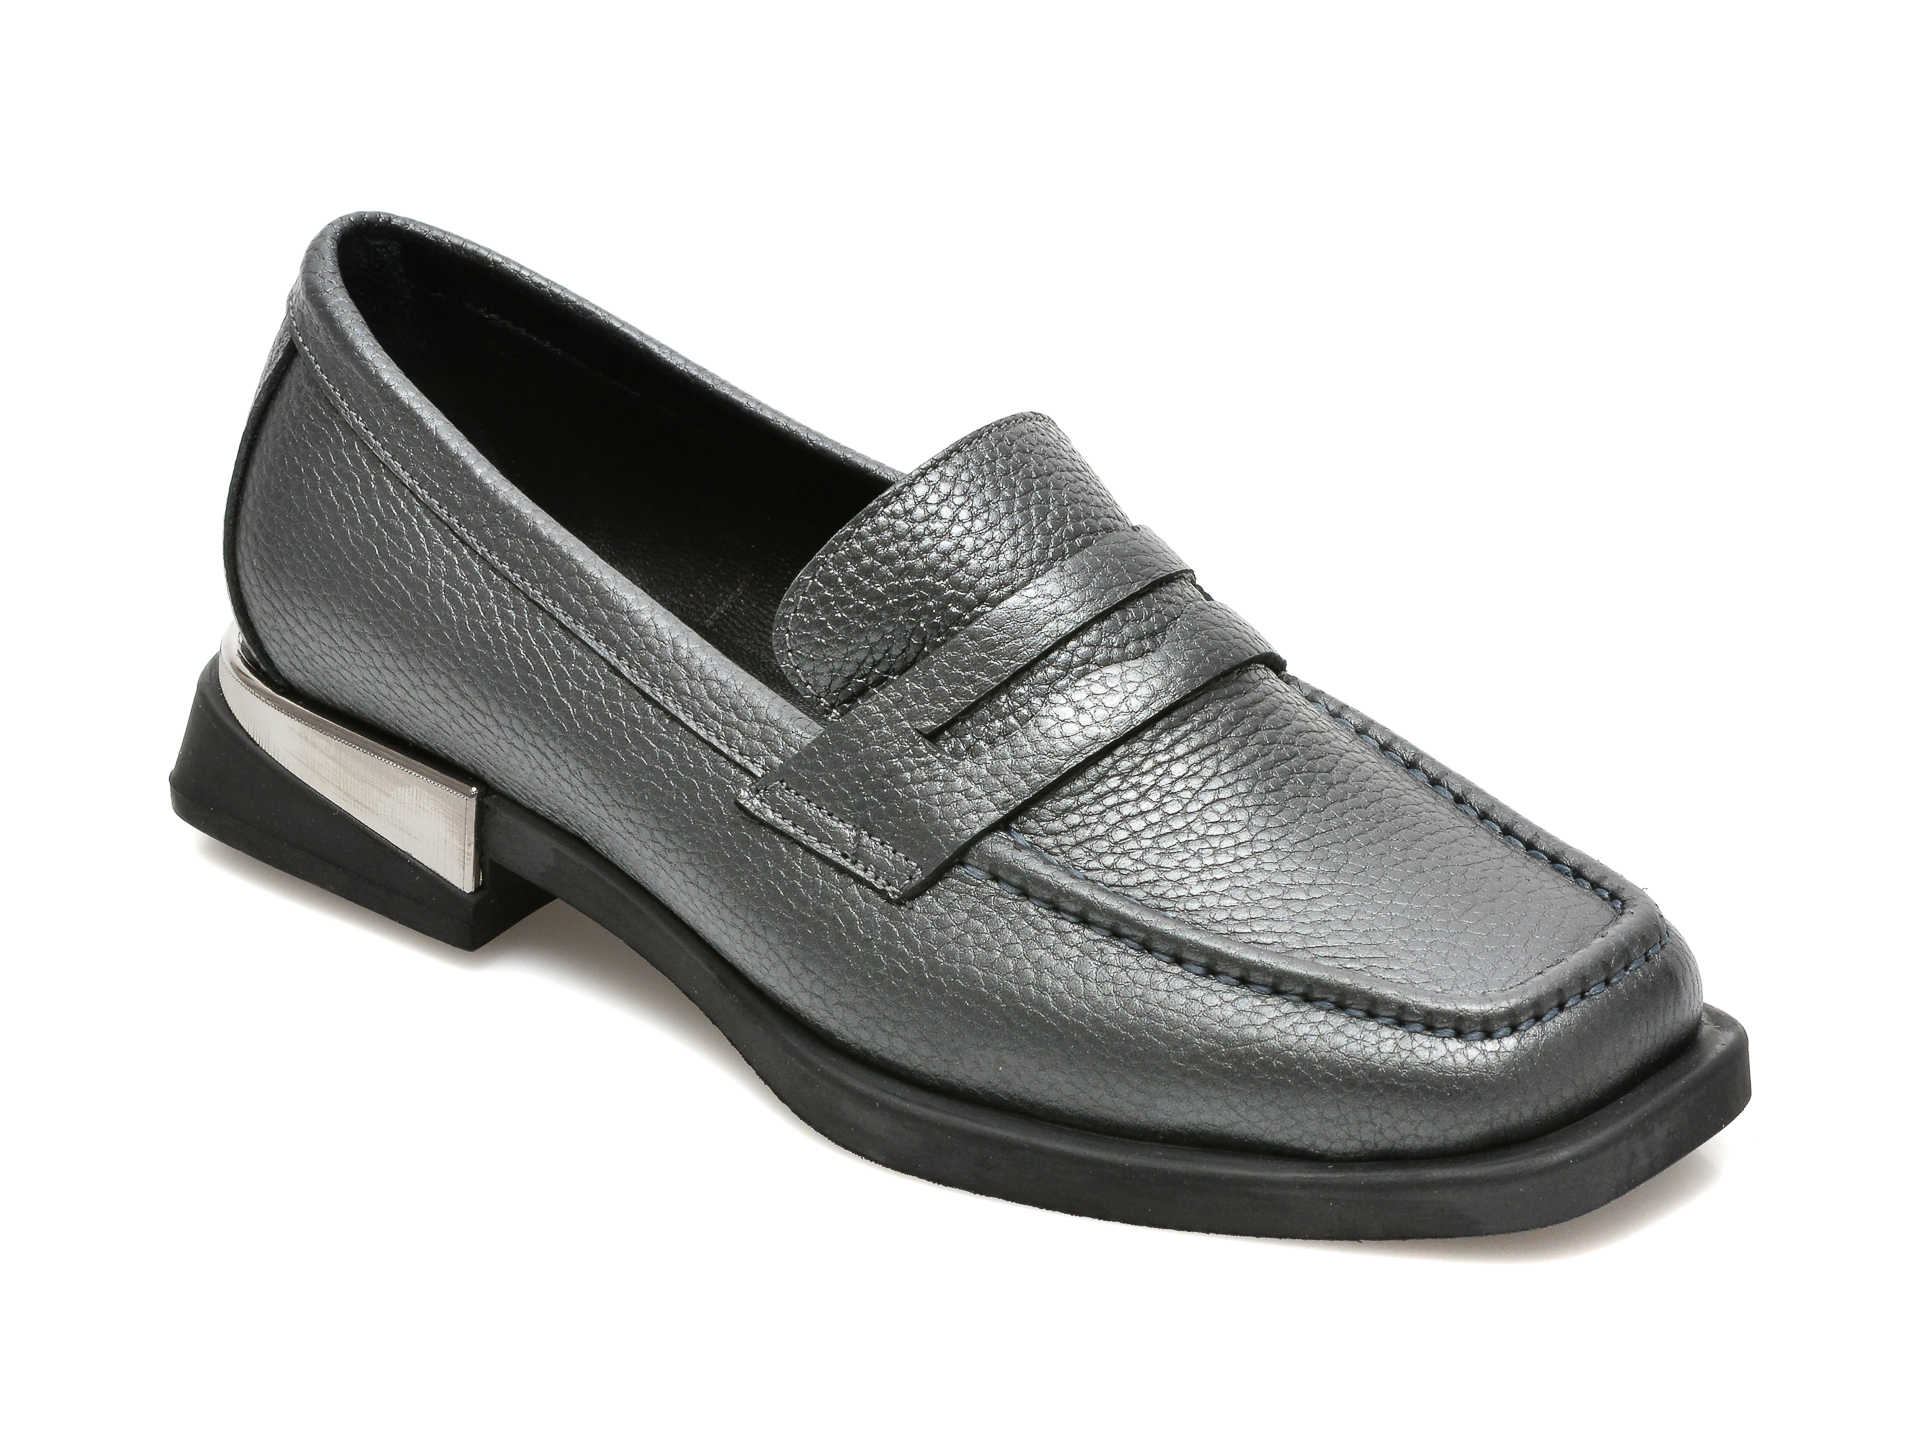 Pantofi FLAVIA PASSINI gri, 221250, din piele naturala Flavia Passini